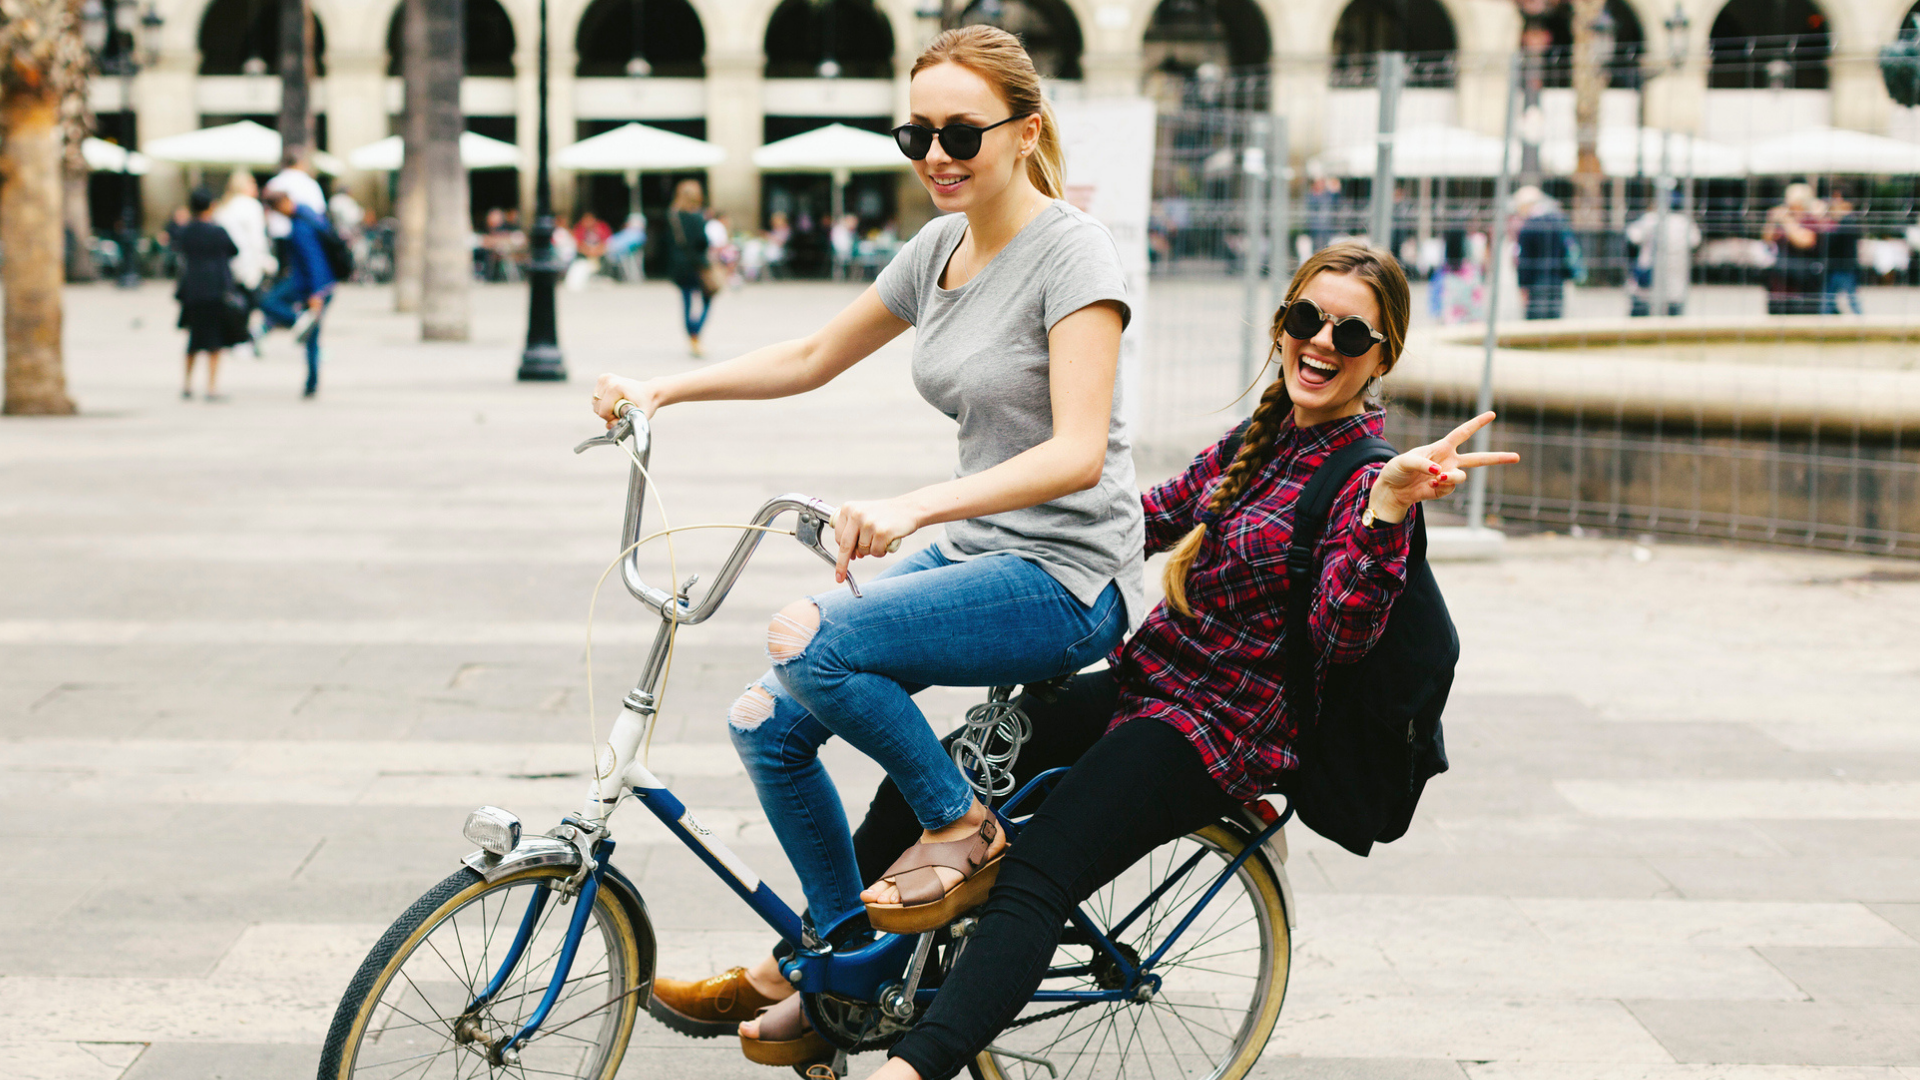 Según estudio salir a pasear en bicicleta ayuda a mejorar el estado de ánimo